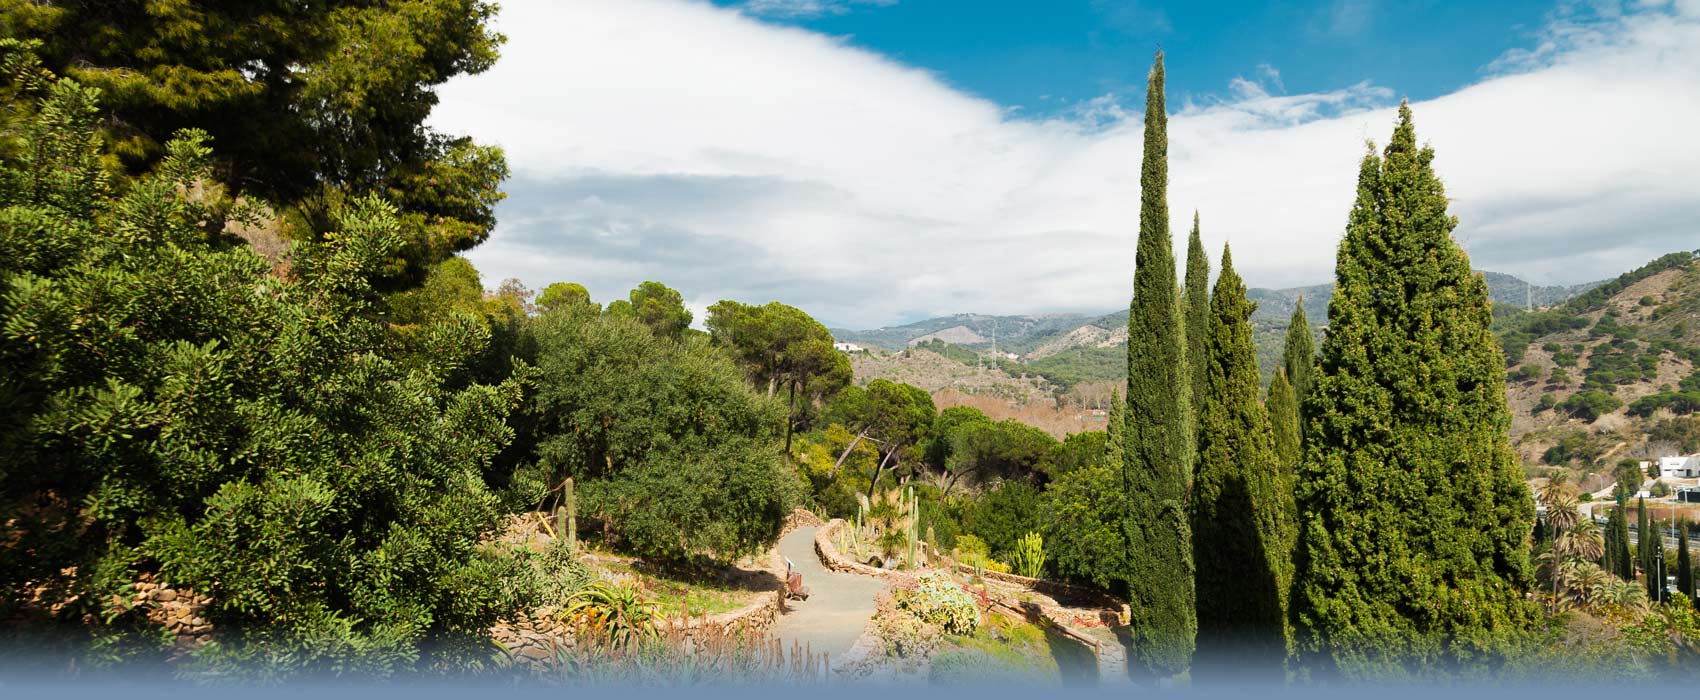 Der Botanische Garten von Malaga